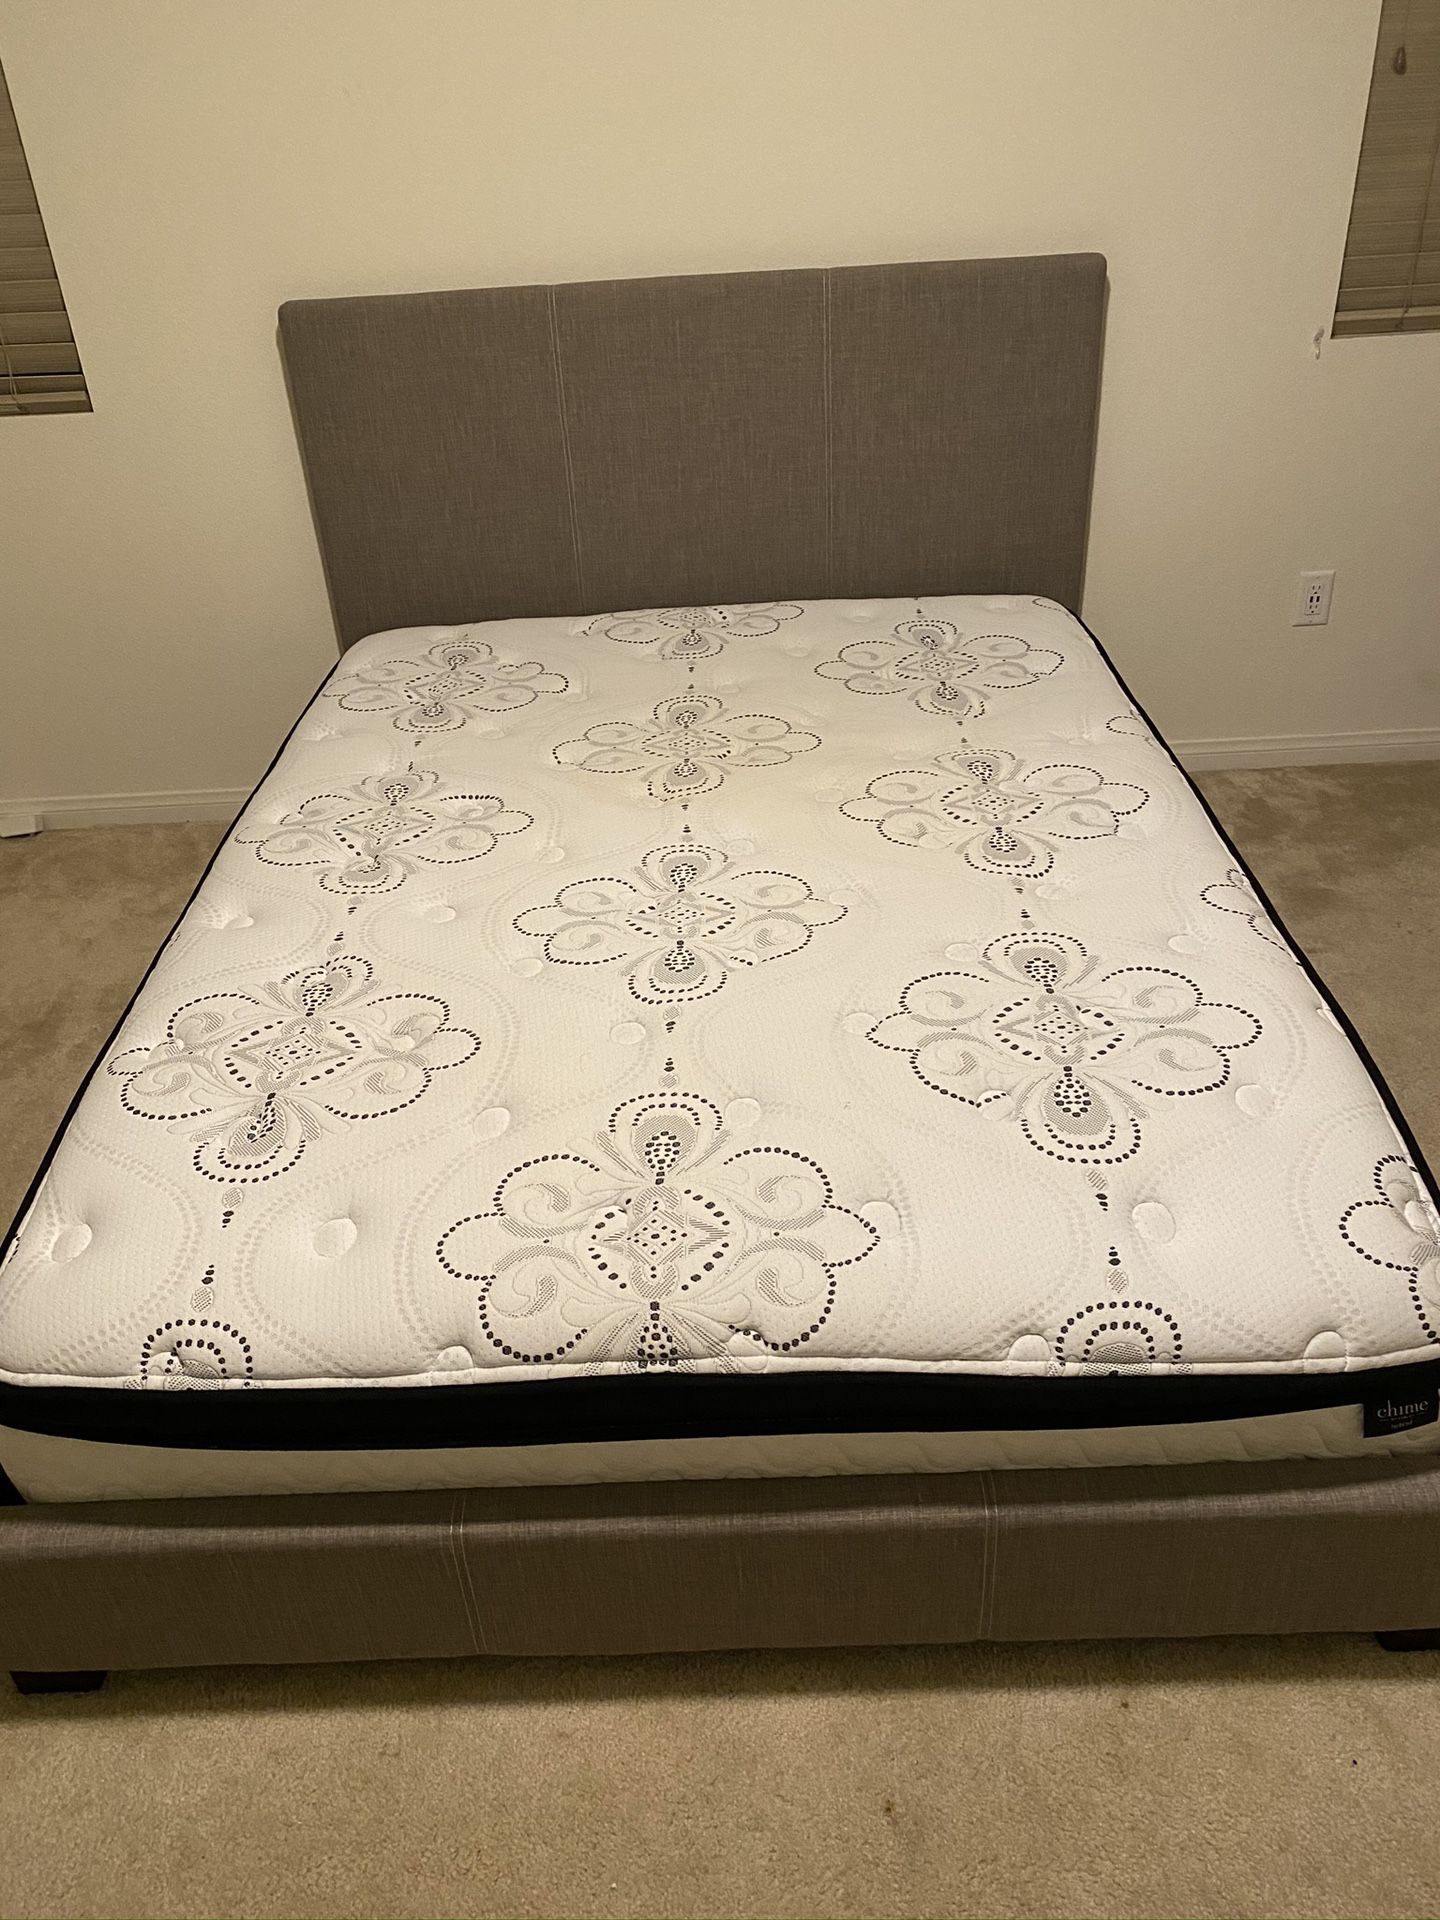 queen bedroom set : mattress frame headboard & dresser